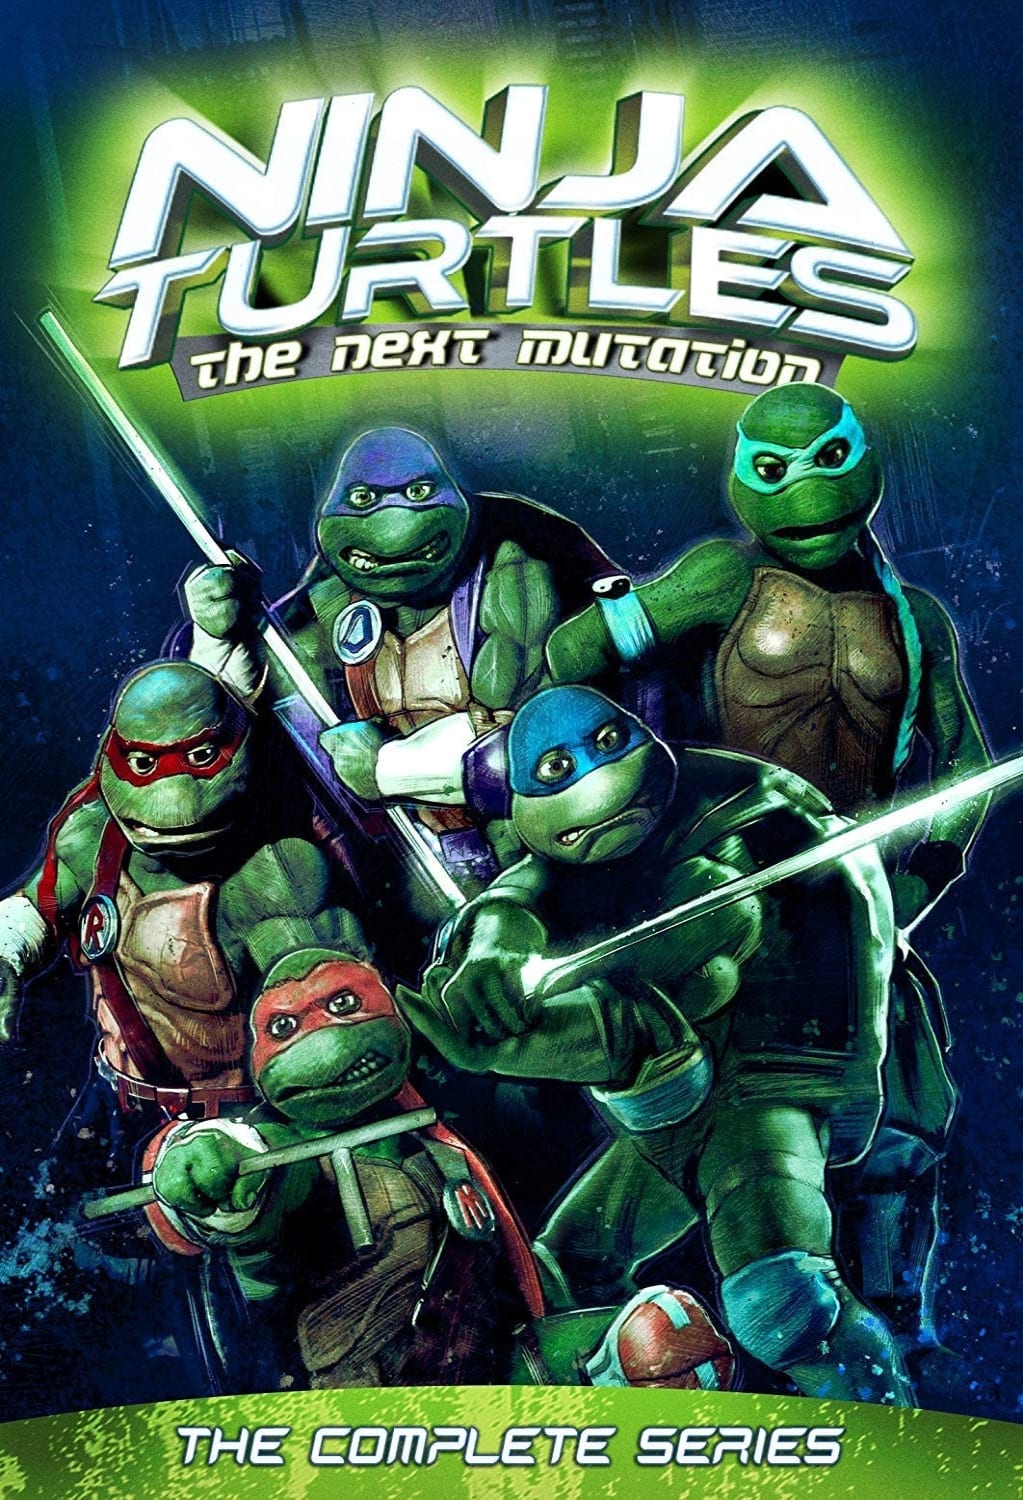 Ninja Turtles: The Next Mutation – The Complete Series (DVD) on MovieShack